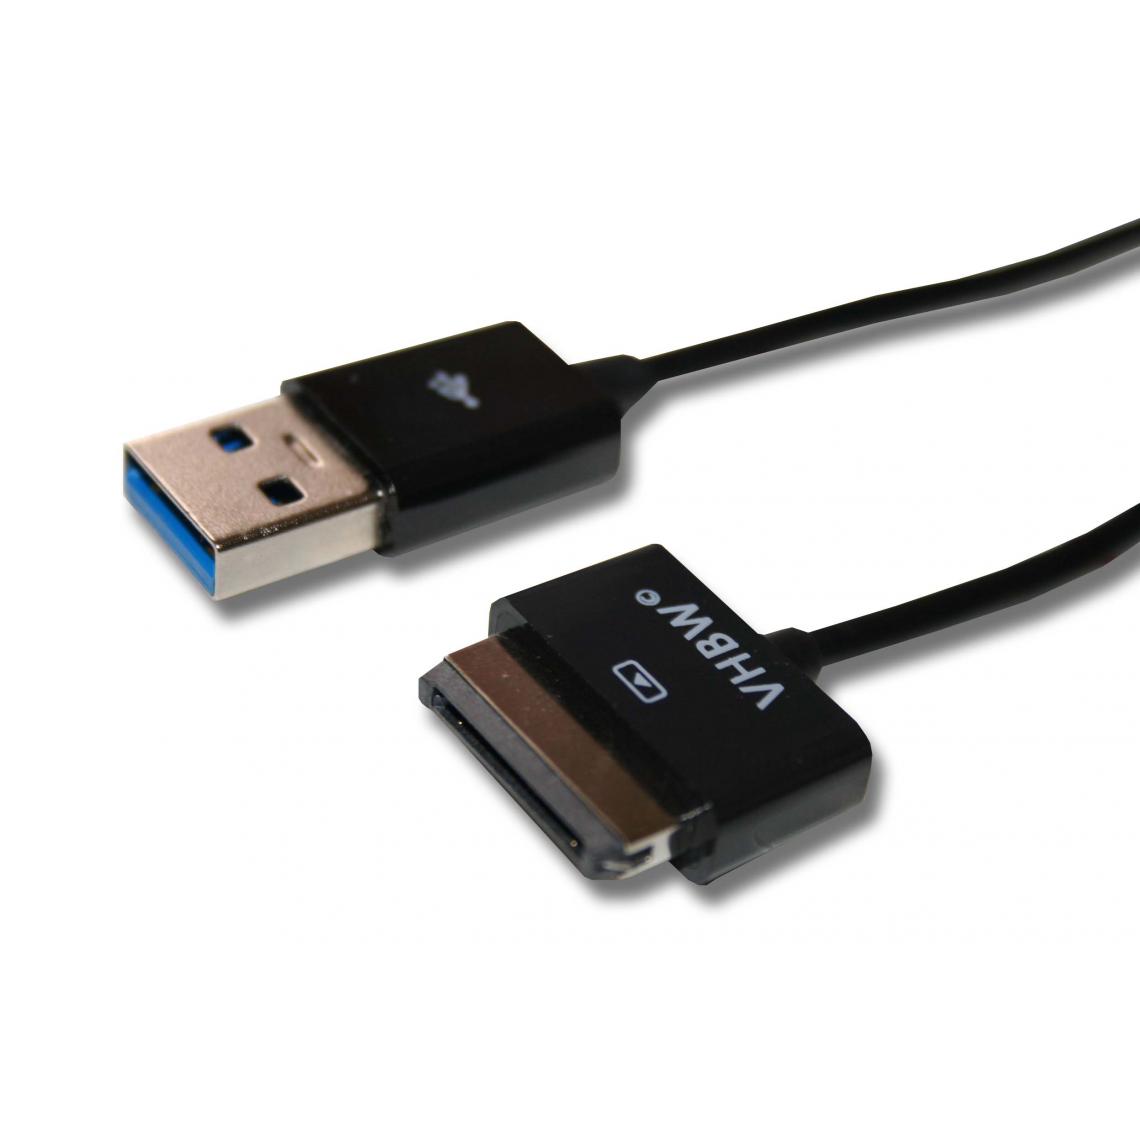 Vhbw - vhbw Câble USB Câble de données (USB standard type A vers tablette) Câble de charge 2en1 100cm compatible avec Asus Eee Pad Transformer TF101, TF101G - Accessoires alimentation